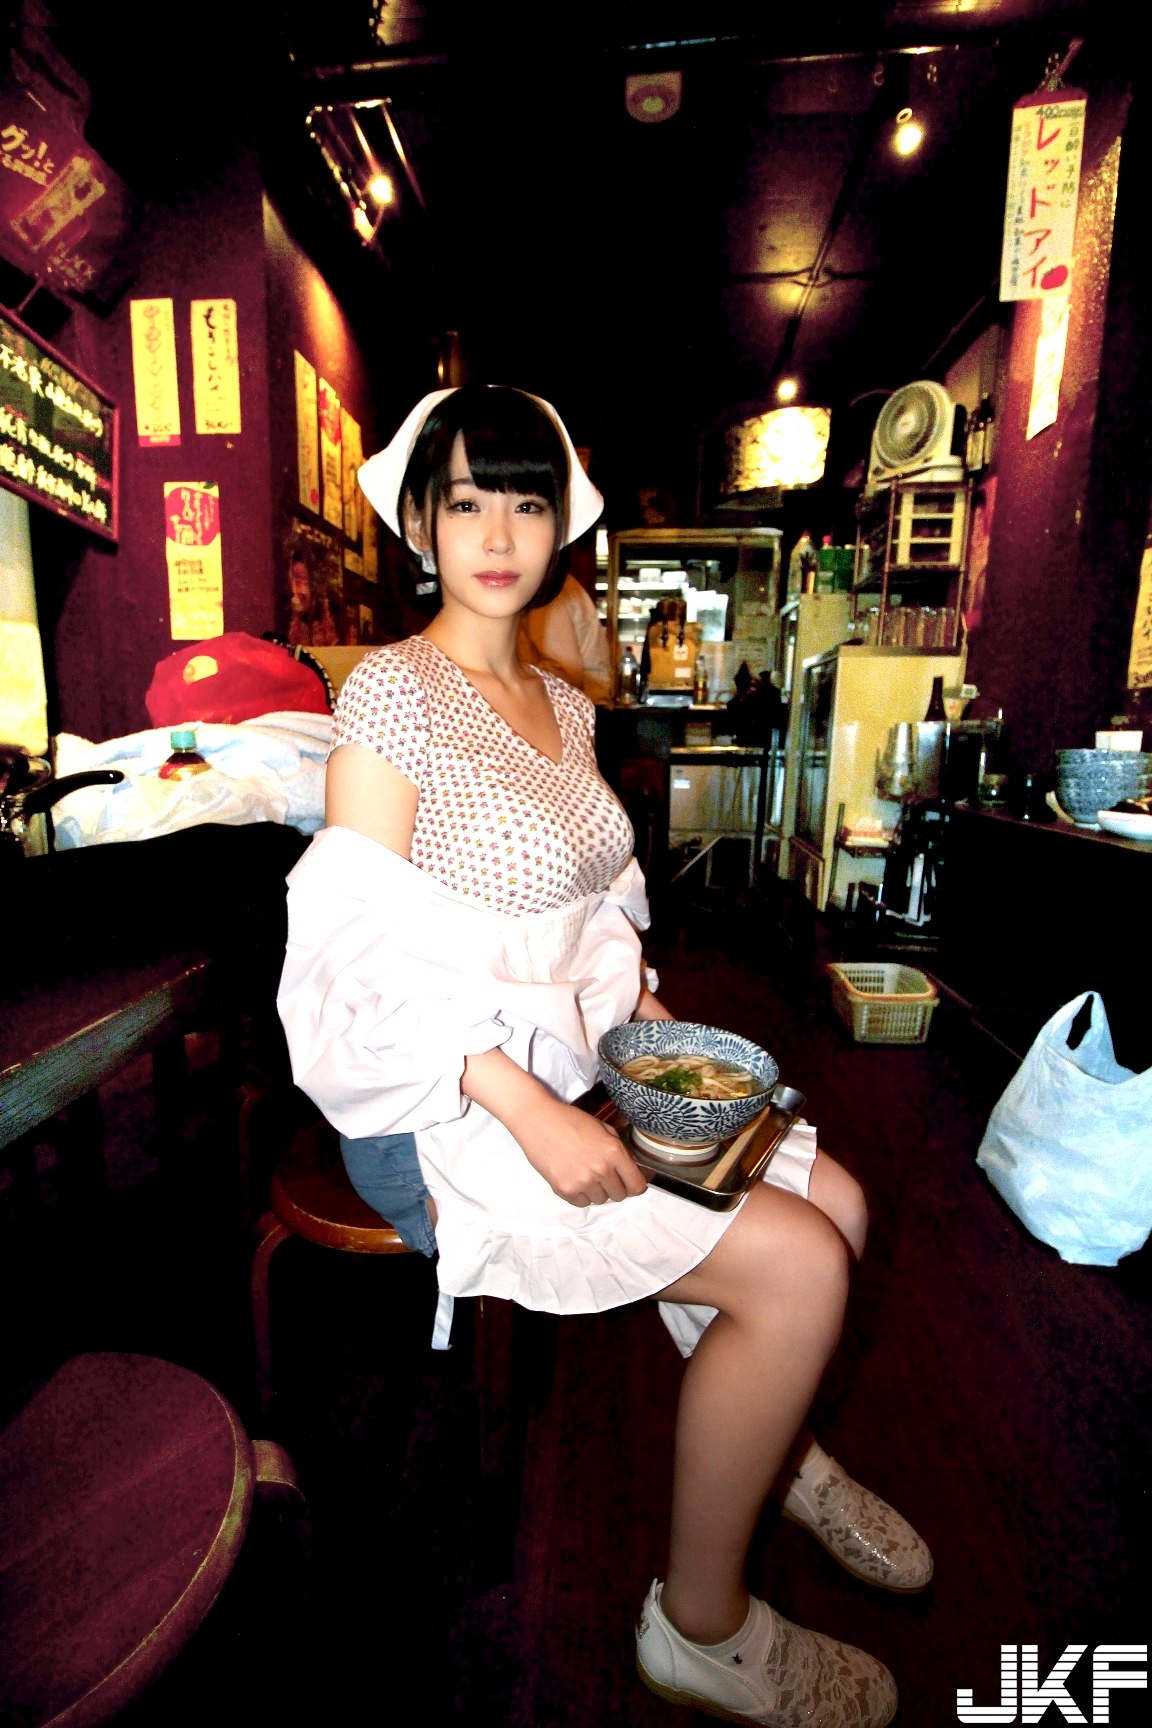 烏龍麵屋店員「膣ごしなめらか」がいる 香川県高松市に - 貼圖 - 性感激情 -